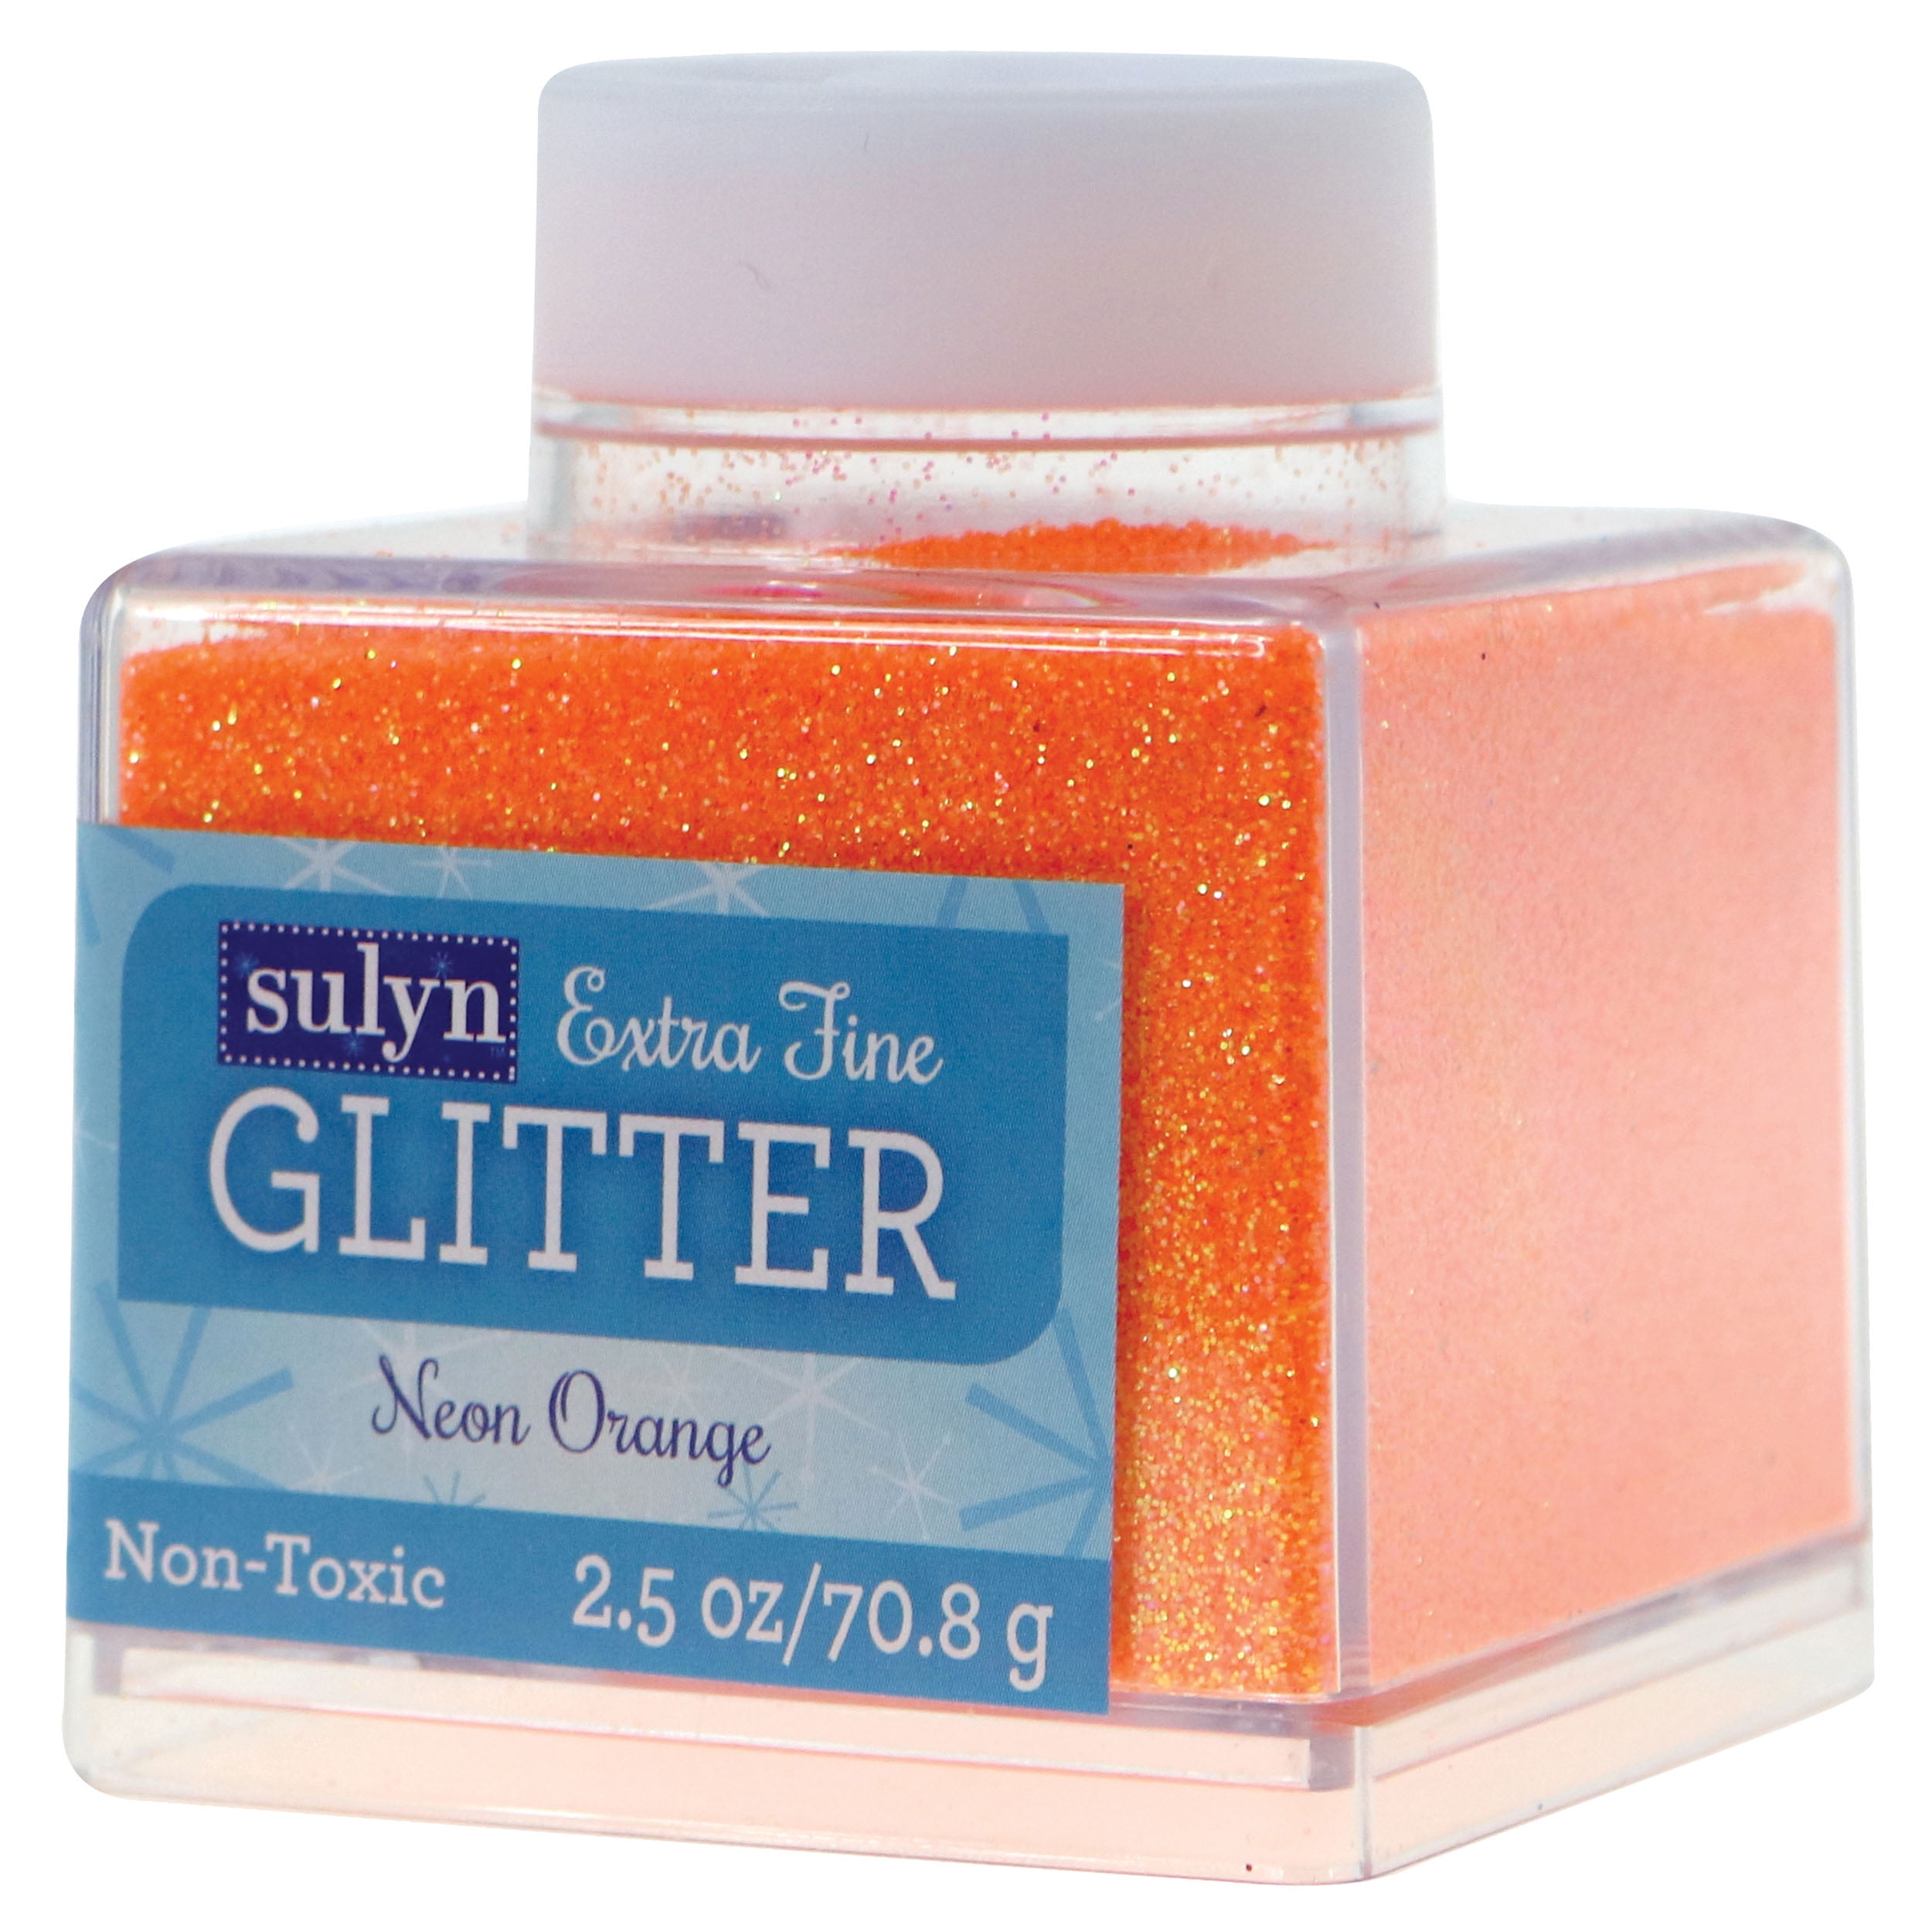 Sulyn Extra Fine Glitter 2oz, Emerald